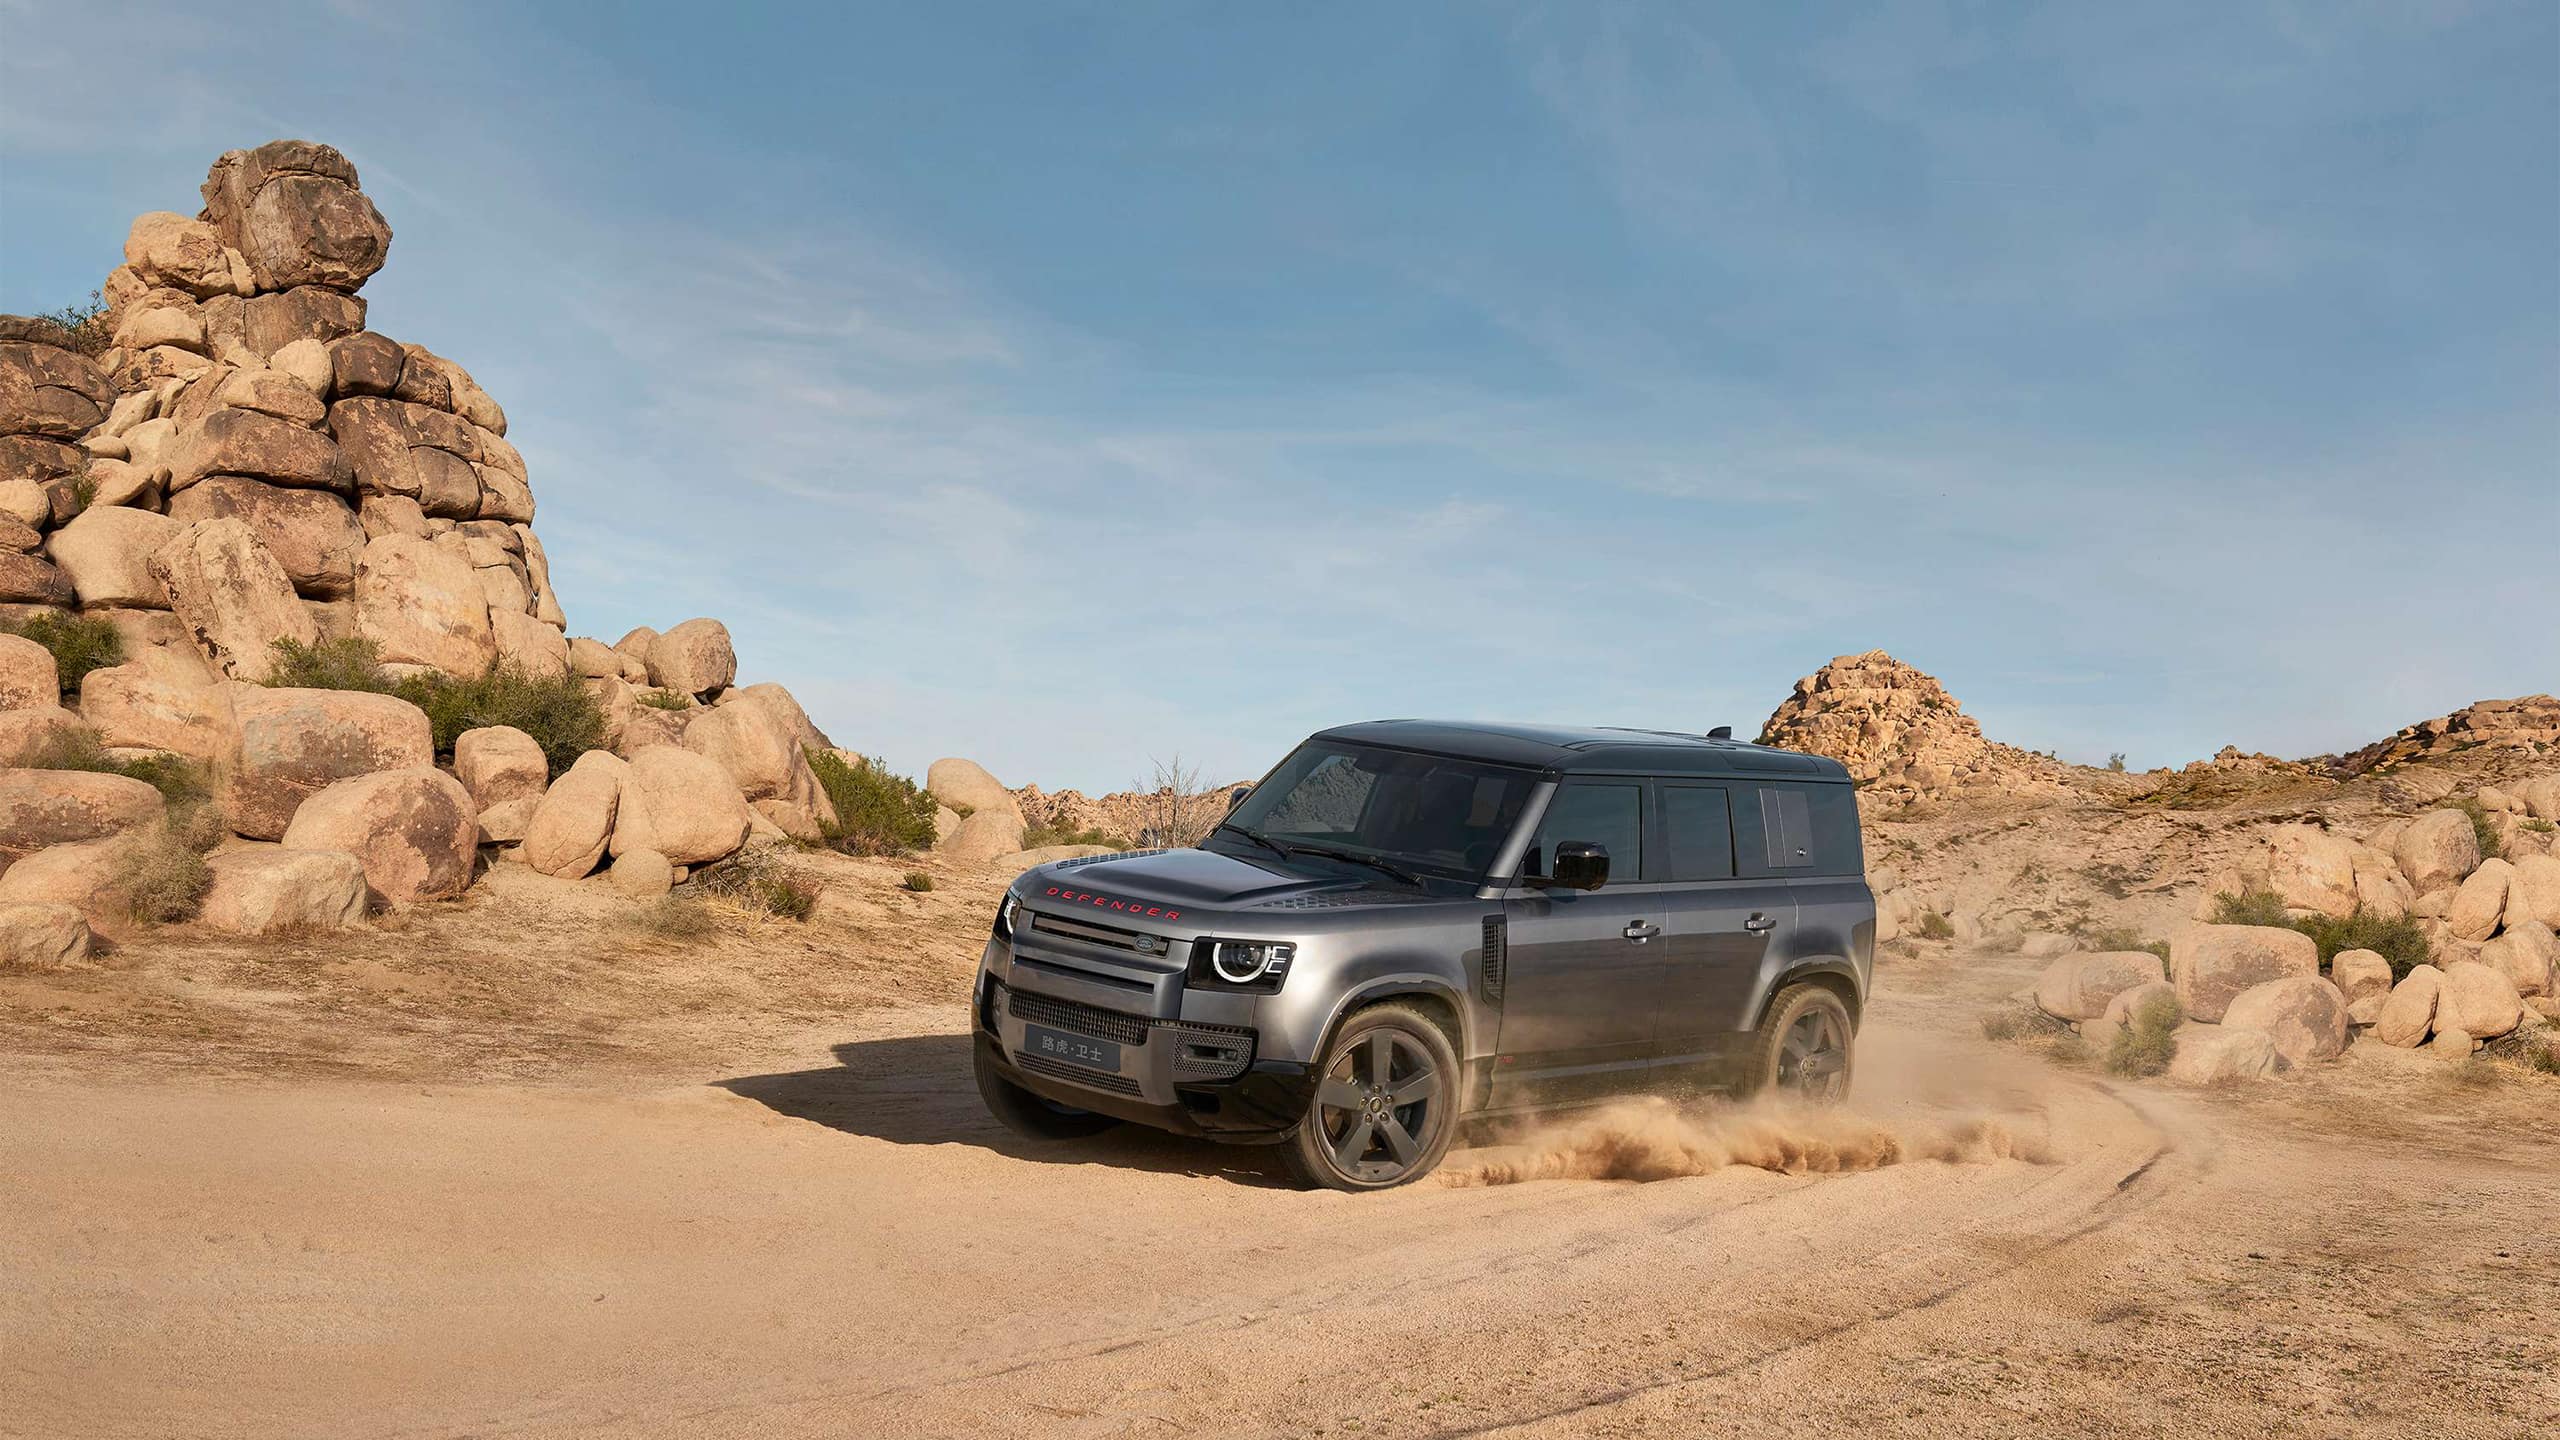 Land Rover Defender in the desert